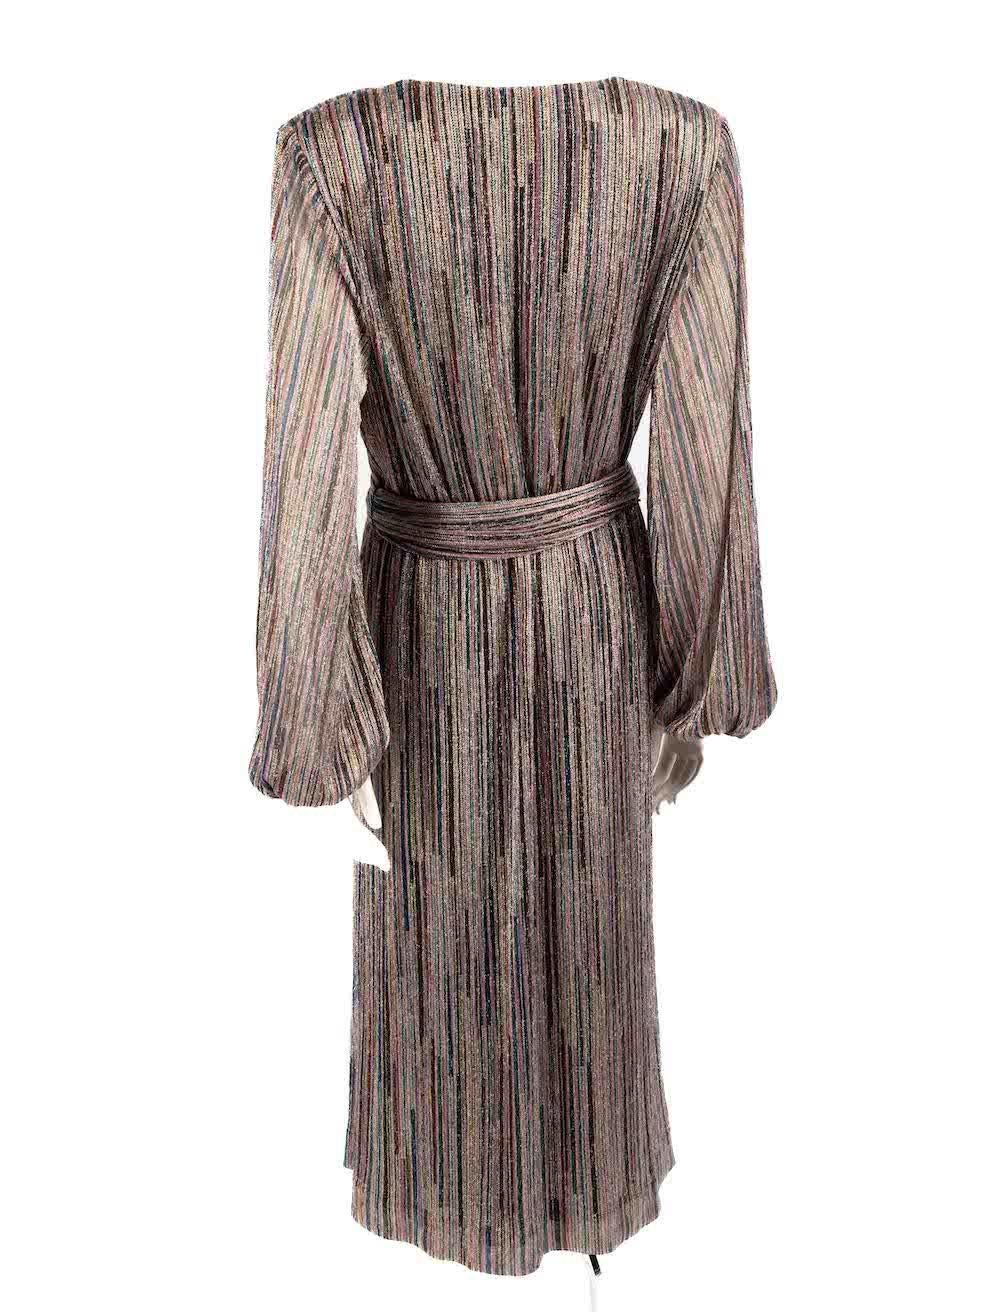 Rebecca Vallance Striped Metallic Bellagio Midi Dress Size XL In New Condition For Sale In London, GB